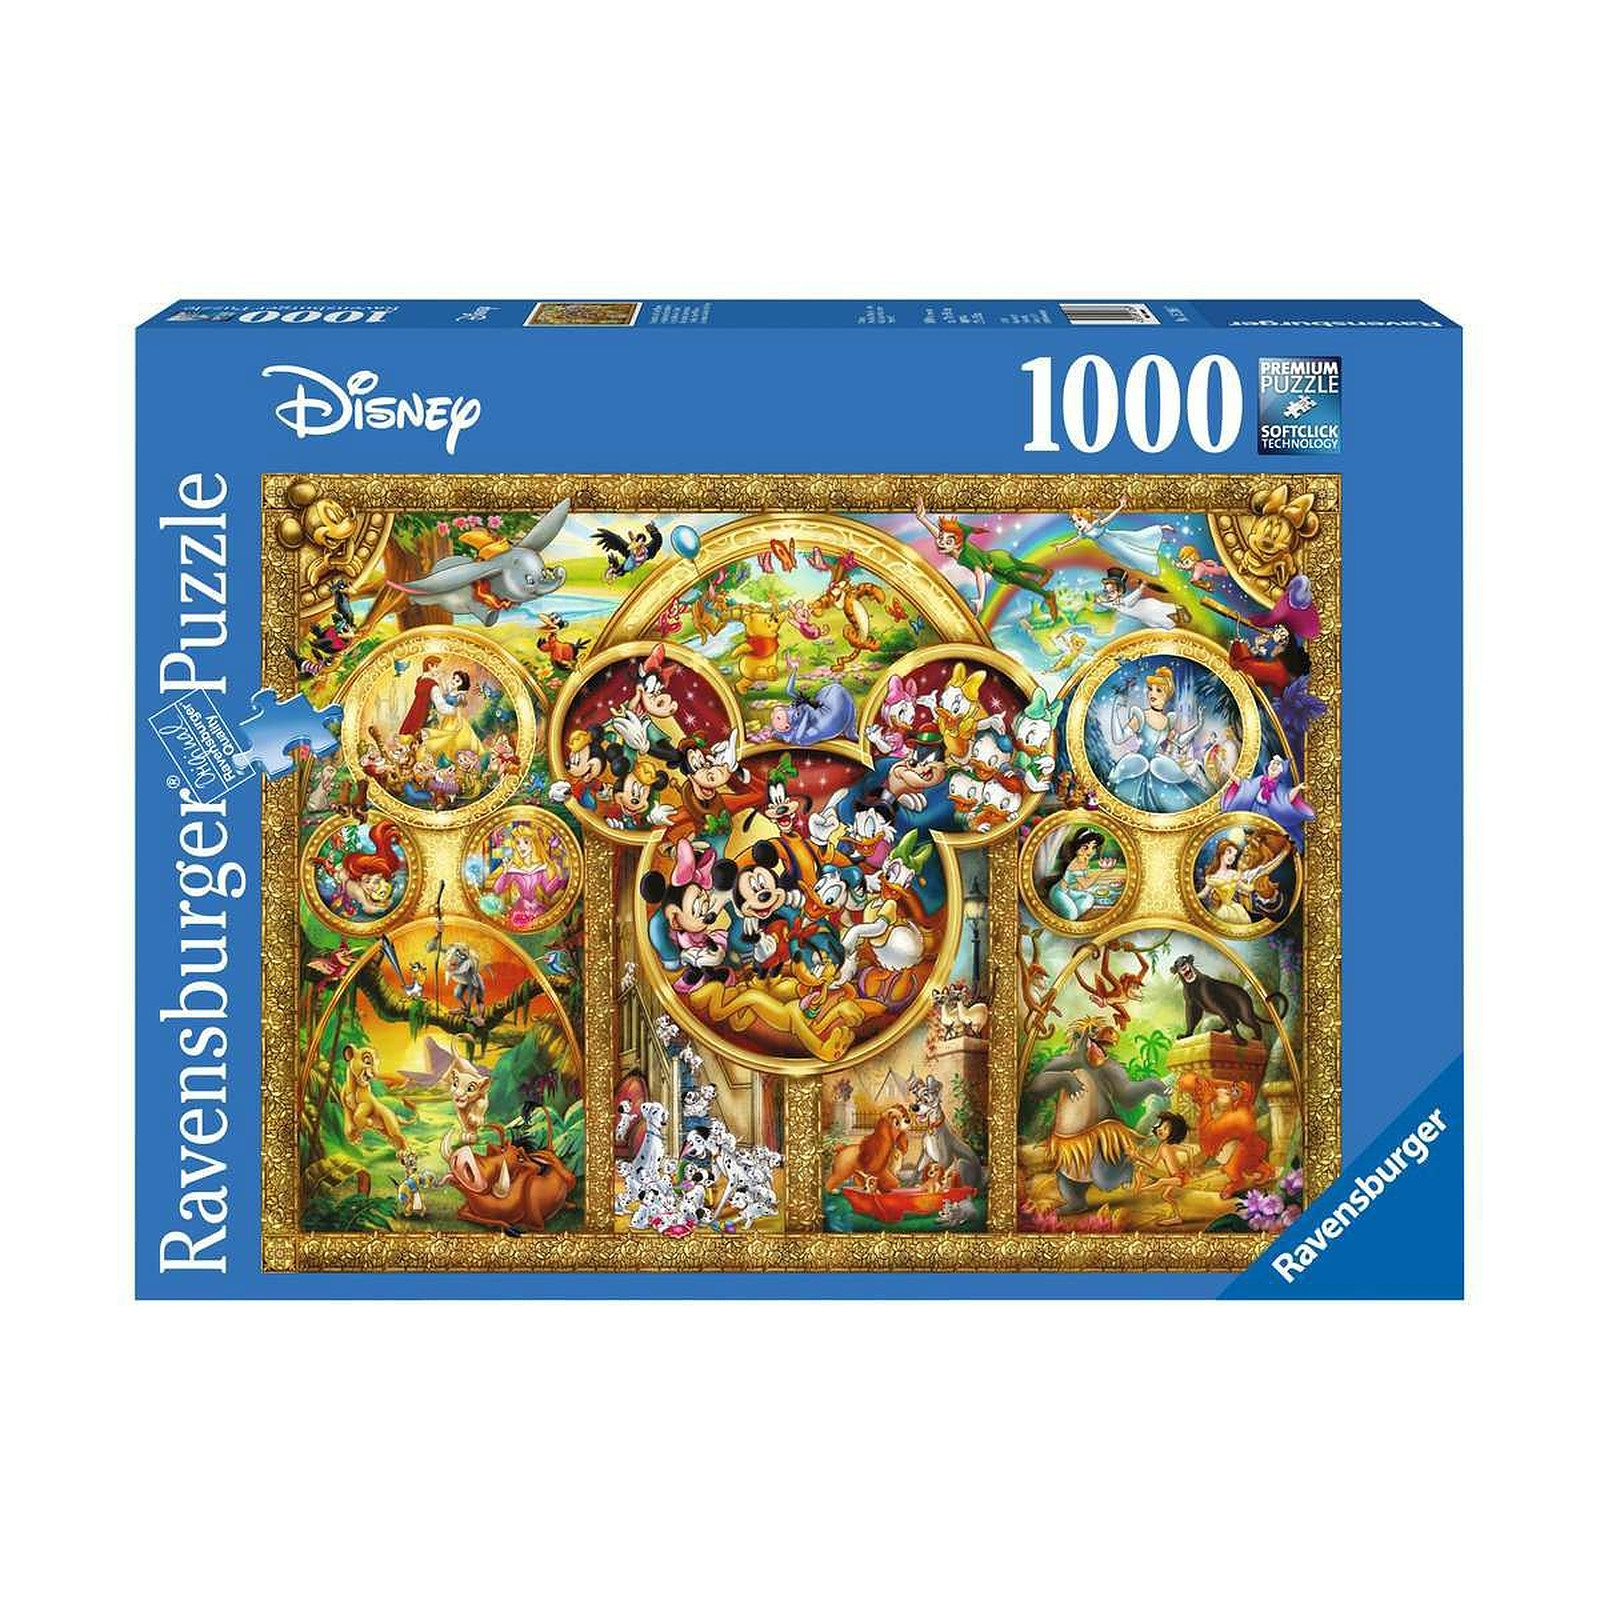 Disney - Puzzle Les plus beaux thèmes (1000 pièces) - Puzzle Ravensburger